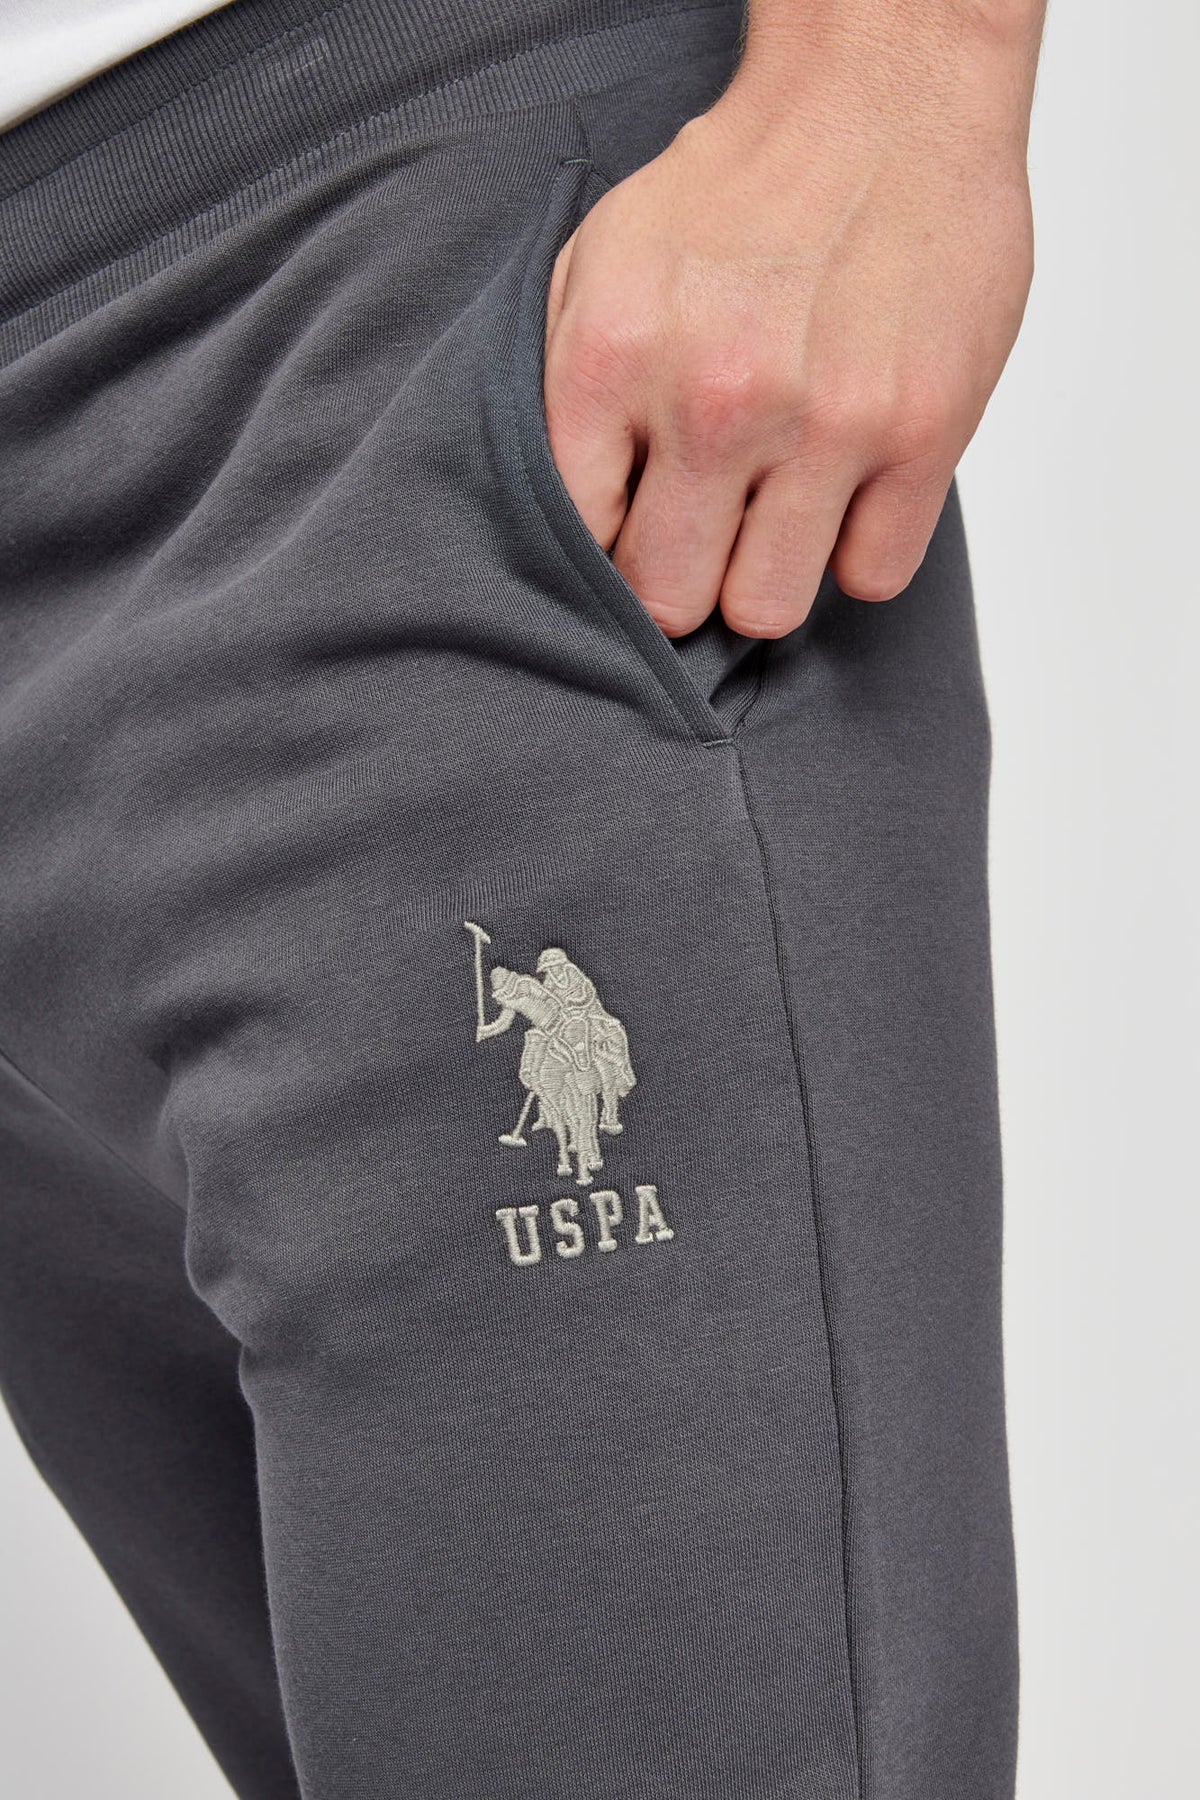 U.S. Polo Assn. Mens Fleece Joggers in Army Green – U.S. Polo Assn. UK